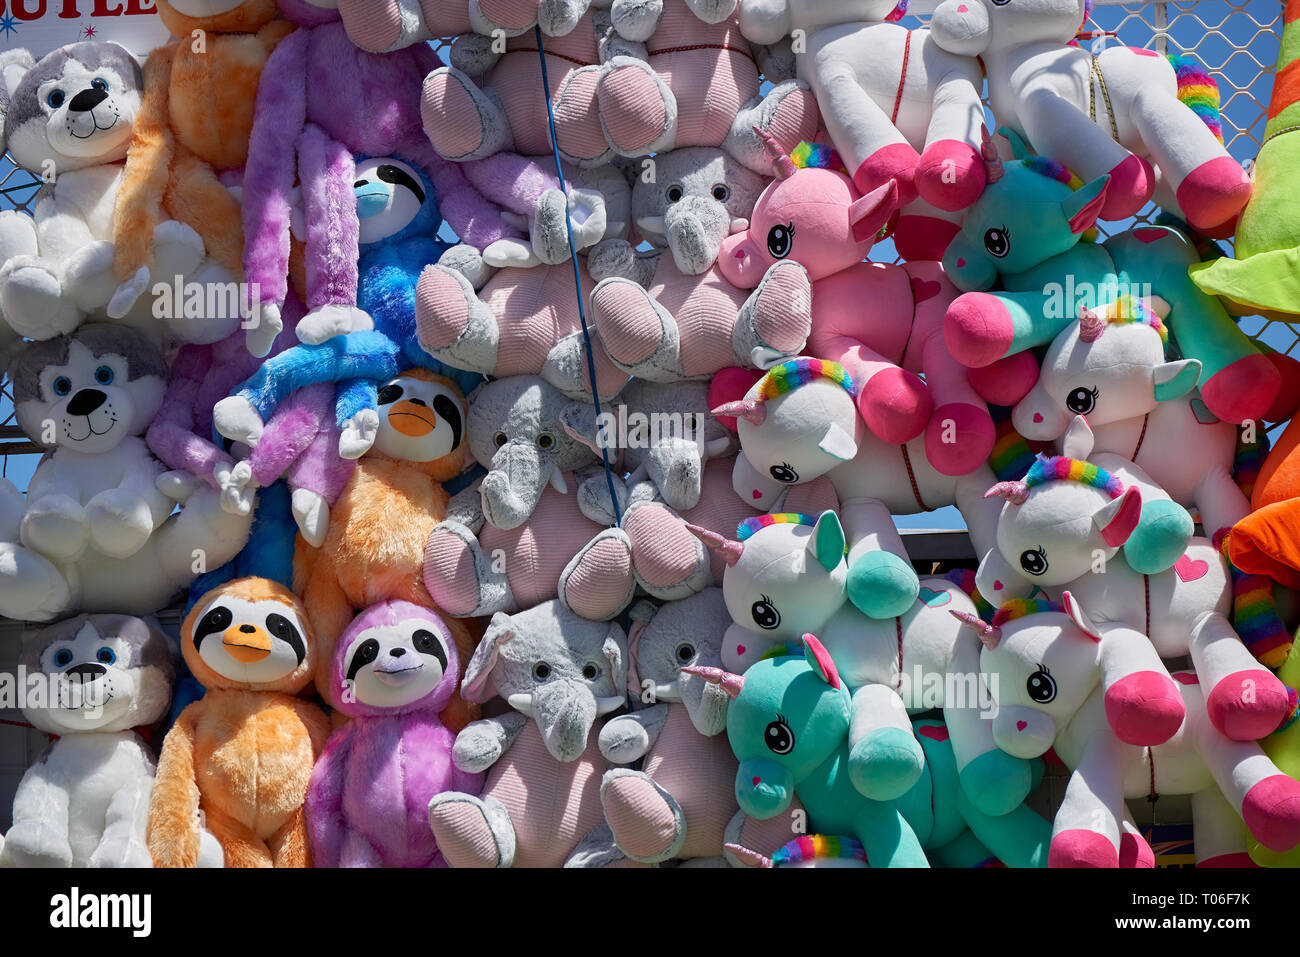 Stofftier Spielzeug zu einem fairen als Preise hängen an Masse an einer  Wand Stockfotografie - Alamy